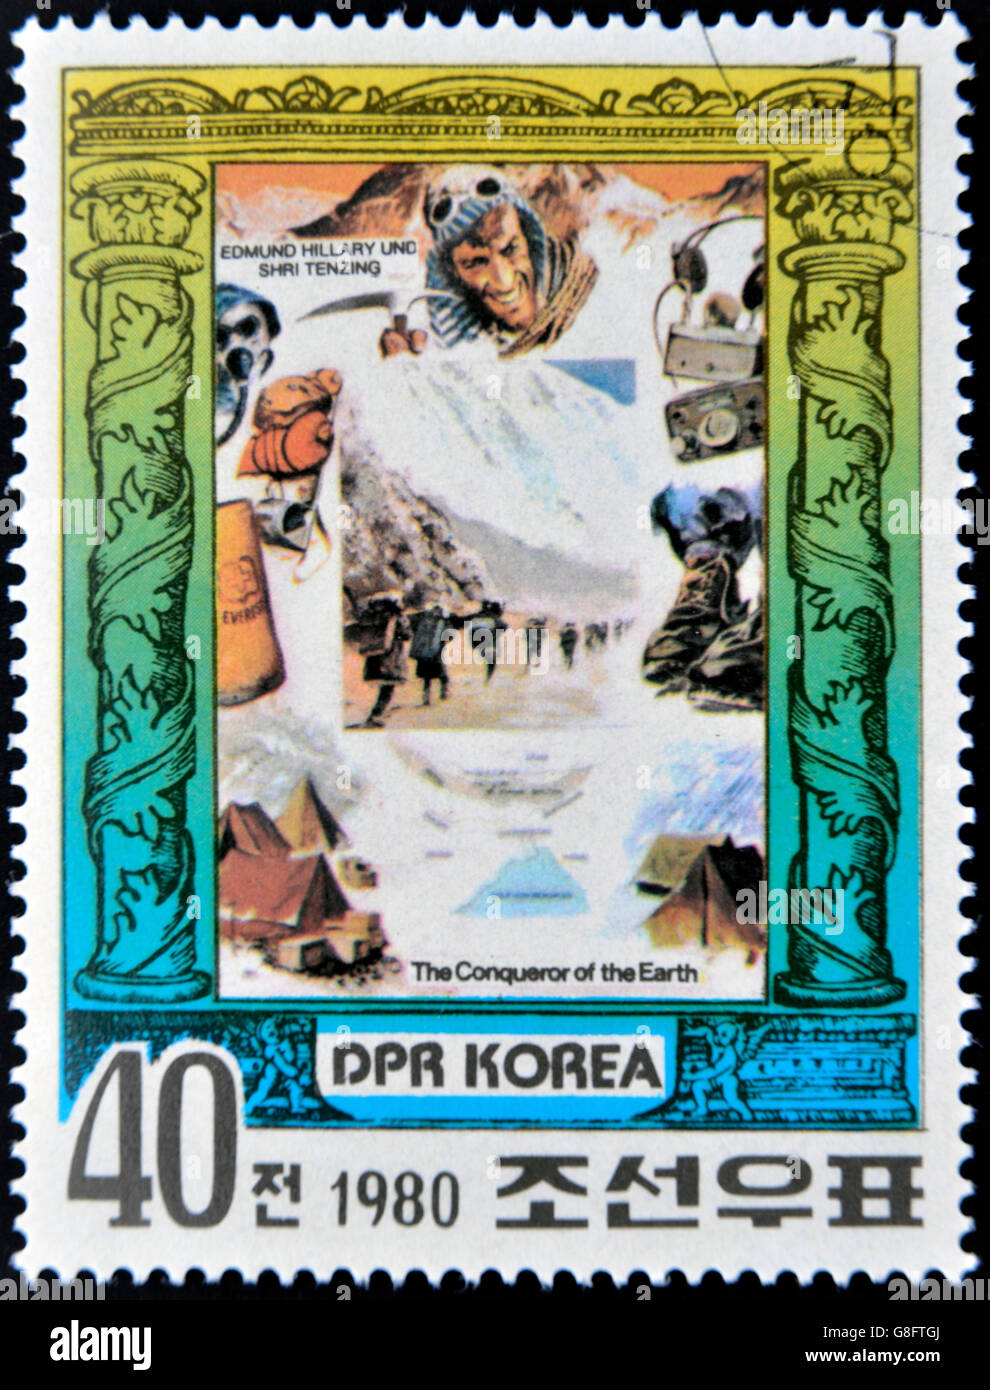 République populaire démocratique de Corée (RPD) - vers 1980 : un timbre imprimé en Corée du Nord affiche Edmund Hillary et Tenzing, Shri Banque D'Images